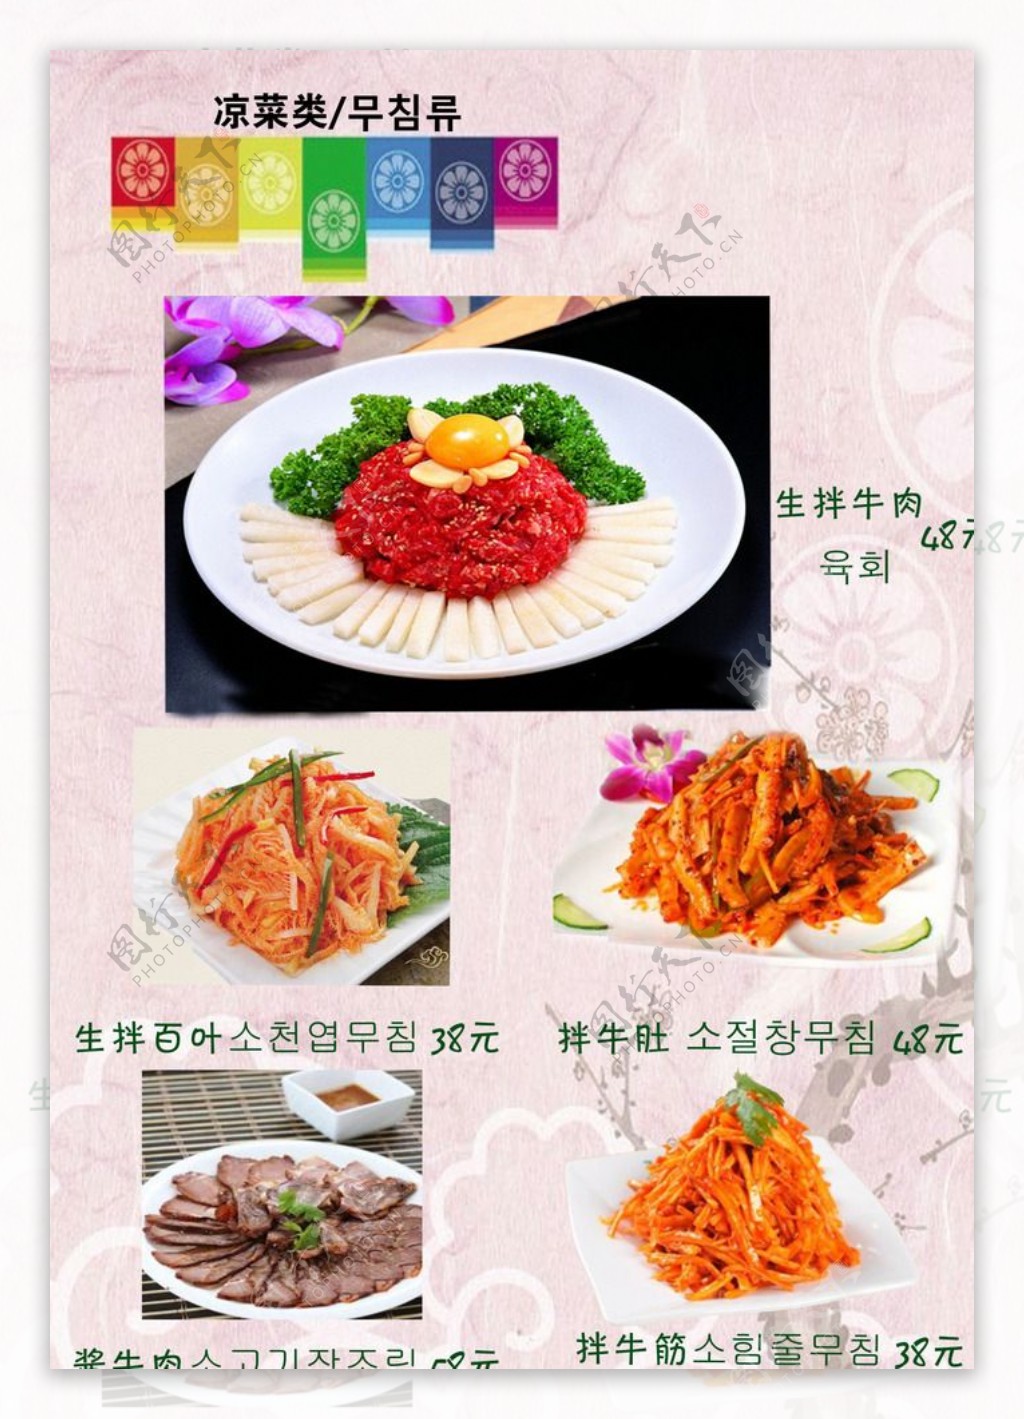 韩式菜单凉菜热菜烧烤炒菜酒水饮